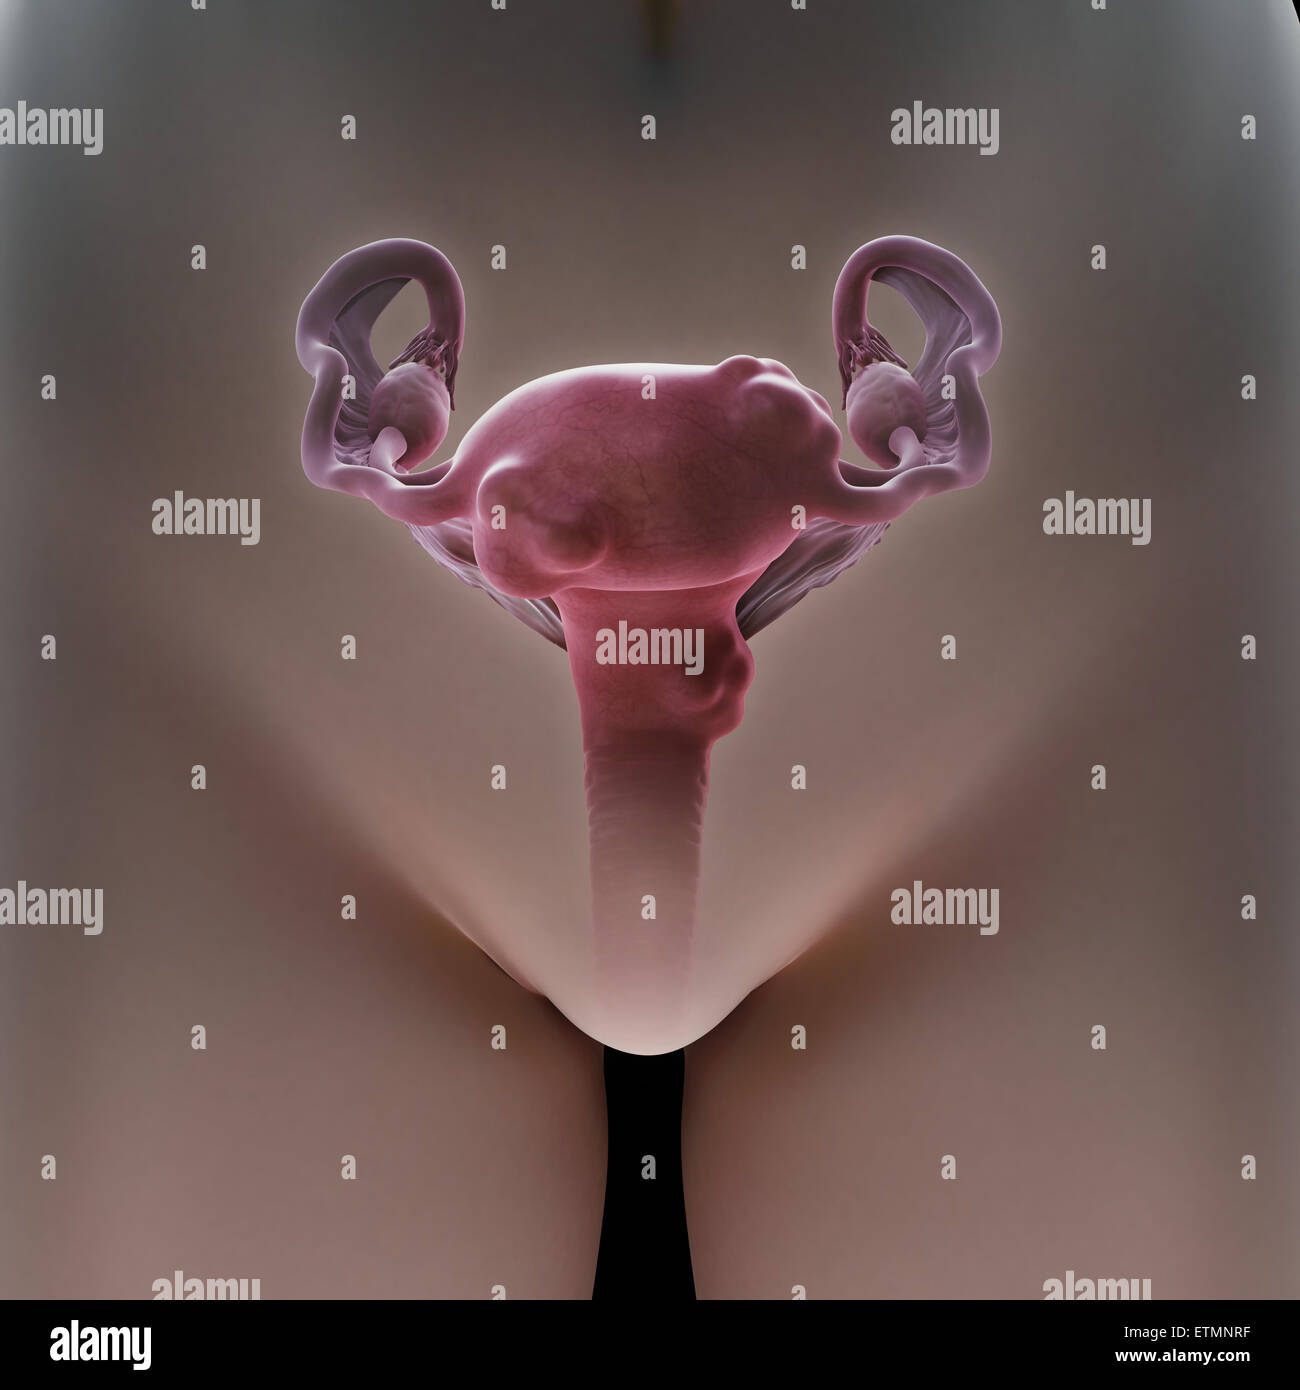 Illustrazione di un grembo afflitto con fibroidi uterini, tumori benigni dell'utero. Foto Stock